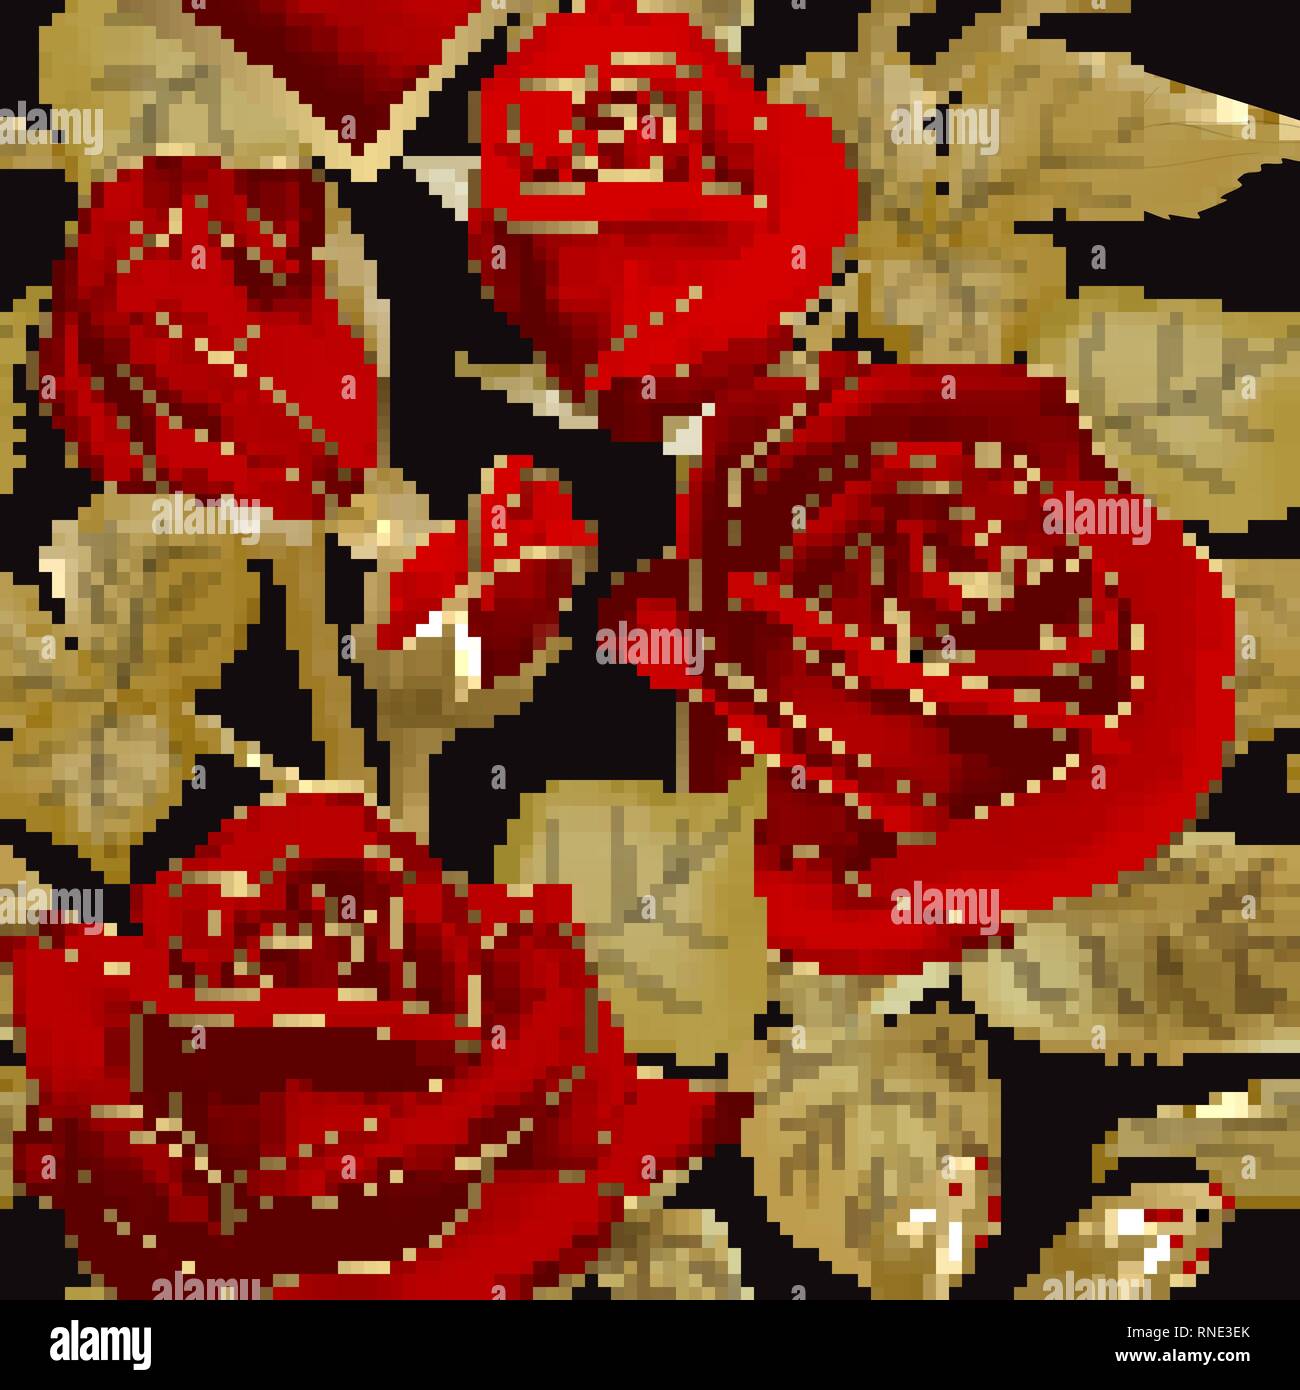 Hãy thưởng thức cảm giác thanh lịch và đẳng cấp với hoa hồng đỏ trong một họa tiết đơn giản nhưng thú vị. Mẫu này với nền đen tạo ra sự tương phản ấn tượng giữa những bông hoa và phần còn lại. Trong một phòng trưng bày, nó sẽ là tâm điểm thu hút mọi ánh nhìn.